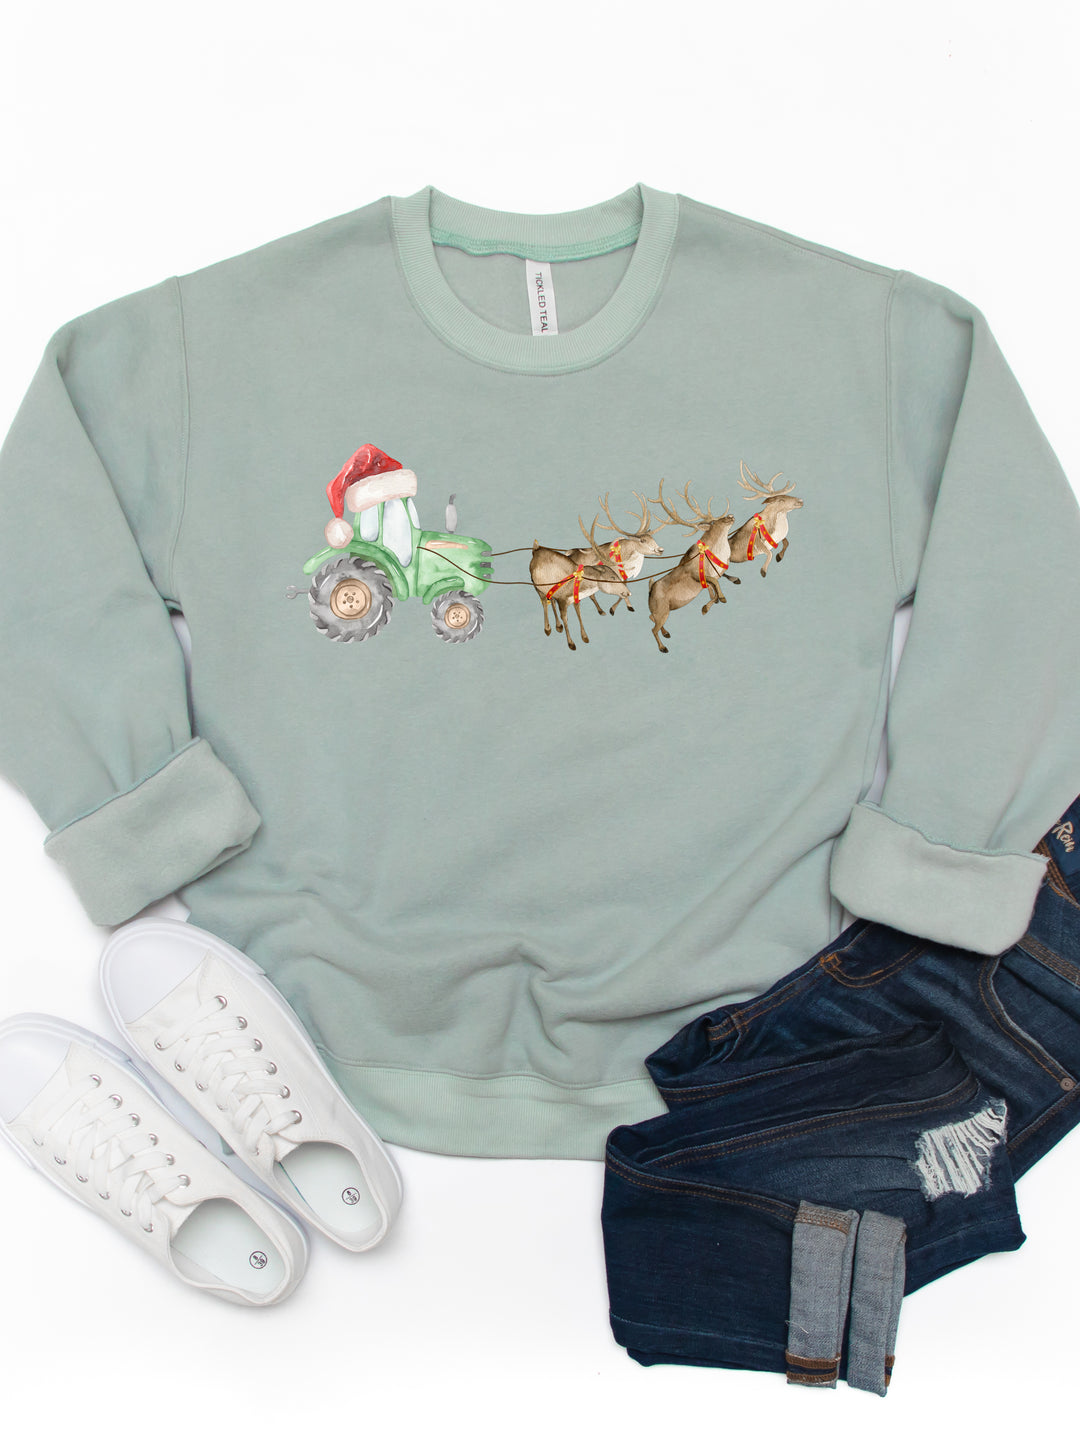 Tractor Sleigh With Reindeer - Christmas Graphic Sweatshirt